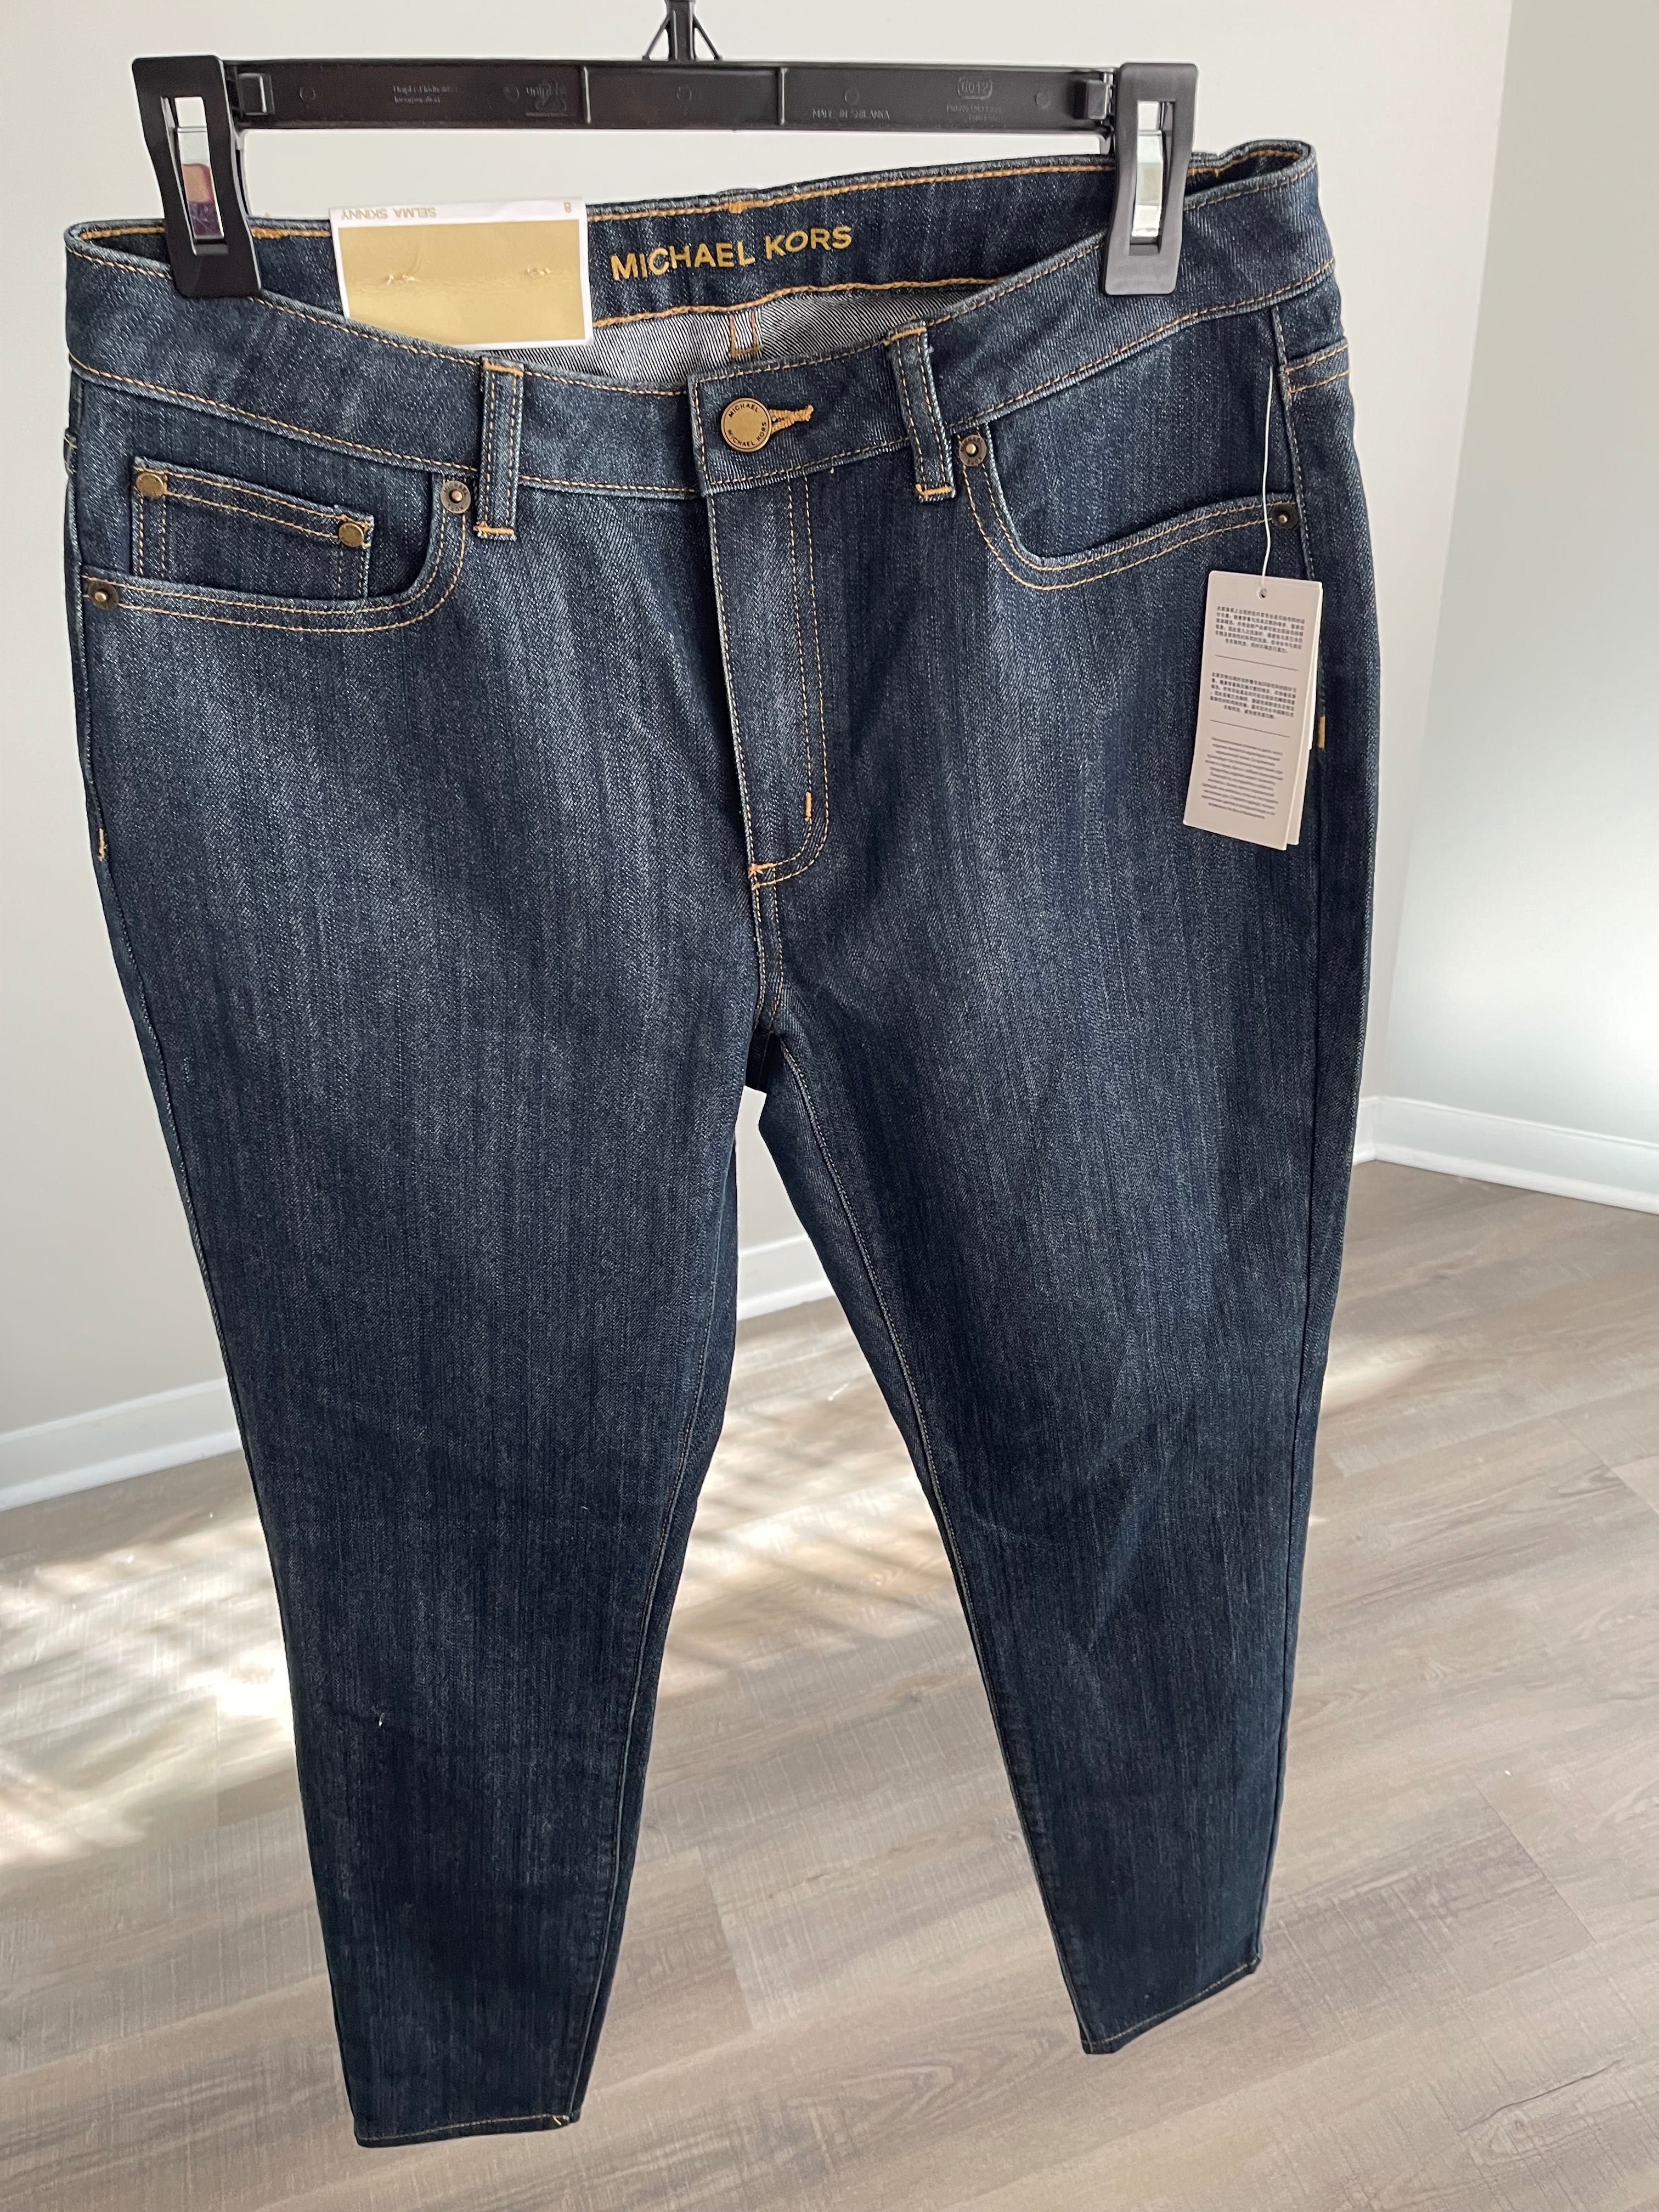 Noi - MICHAEL KORS jeans